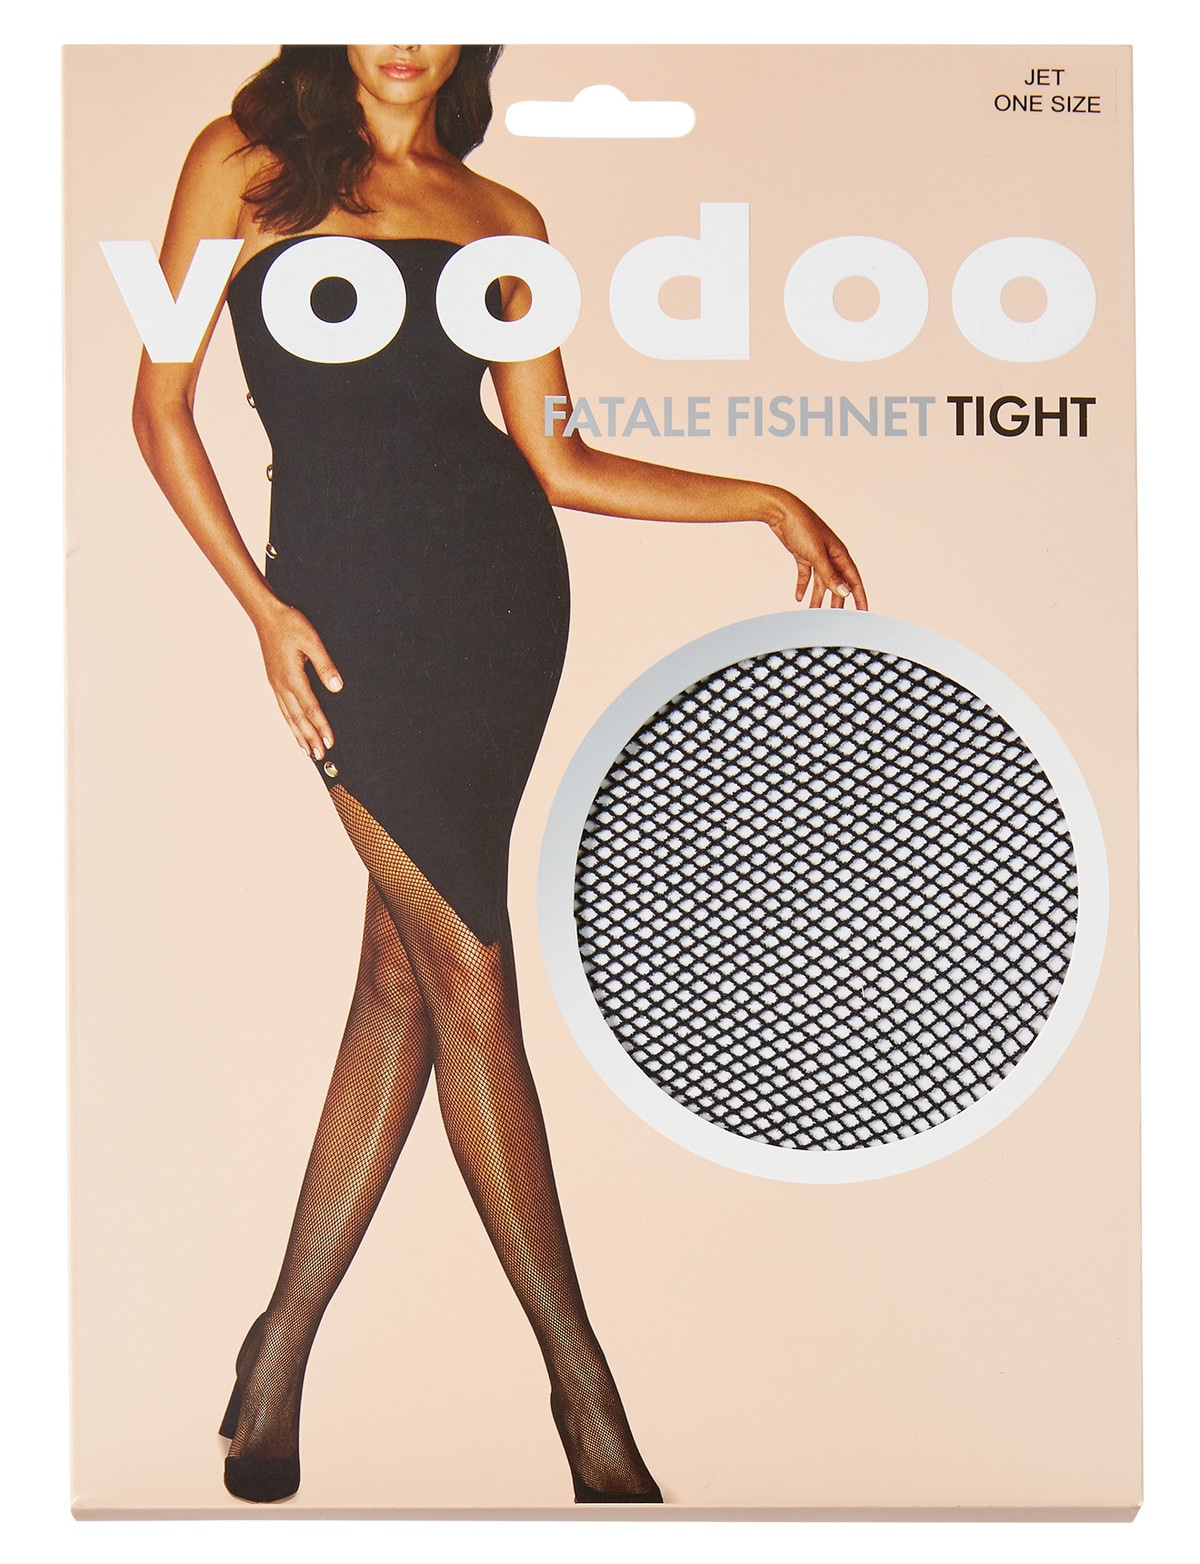 Voodoo Fatale Fishnet Tight Jet - Hosiery